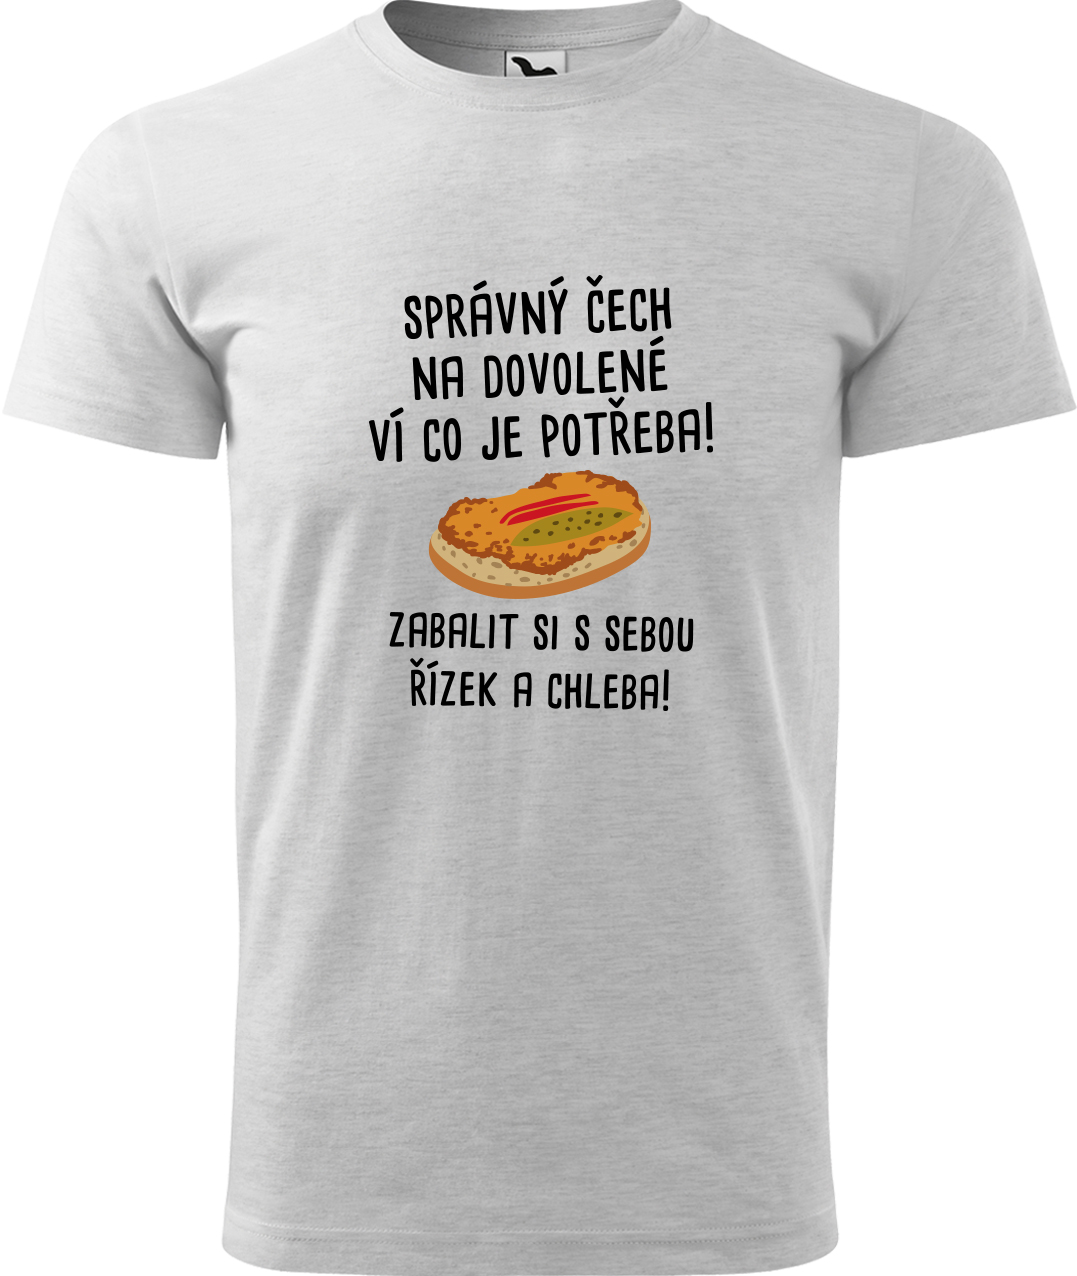 Pánské cestovatelské tričko - Správný Čech na dovolené, ví co je potřeba! Velikost: S, Barva: Světle šedý melír (03), Střih: pánský